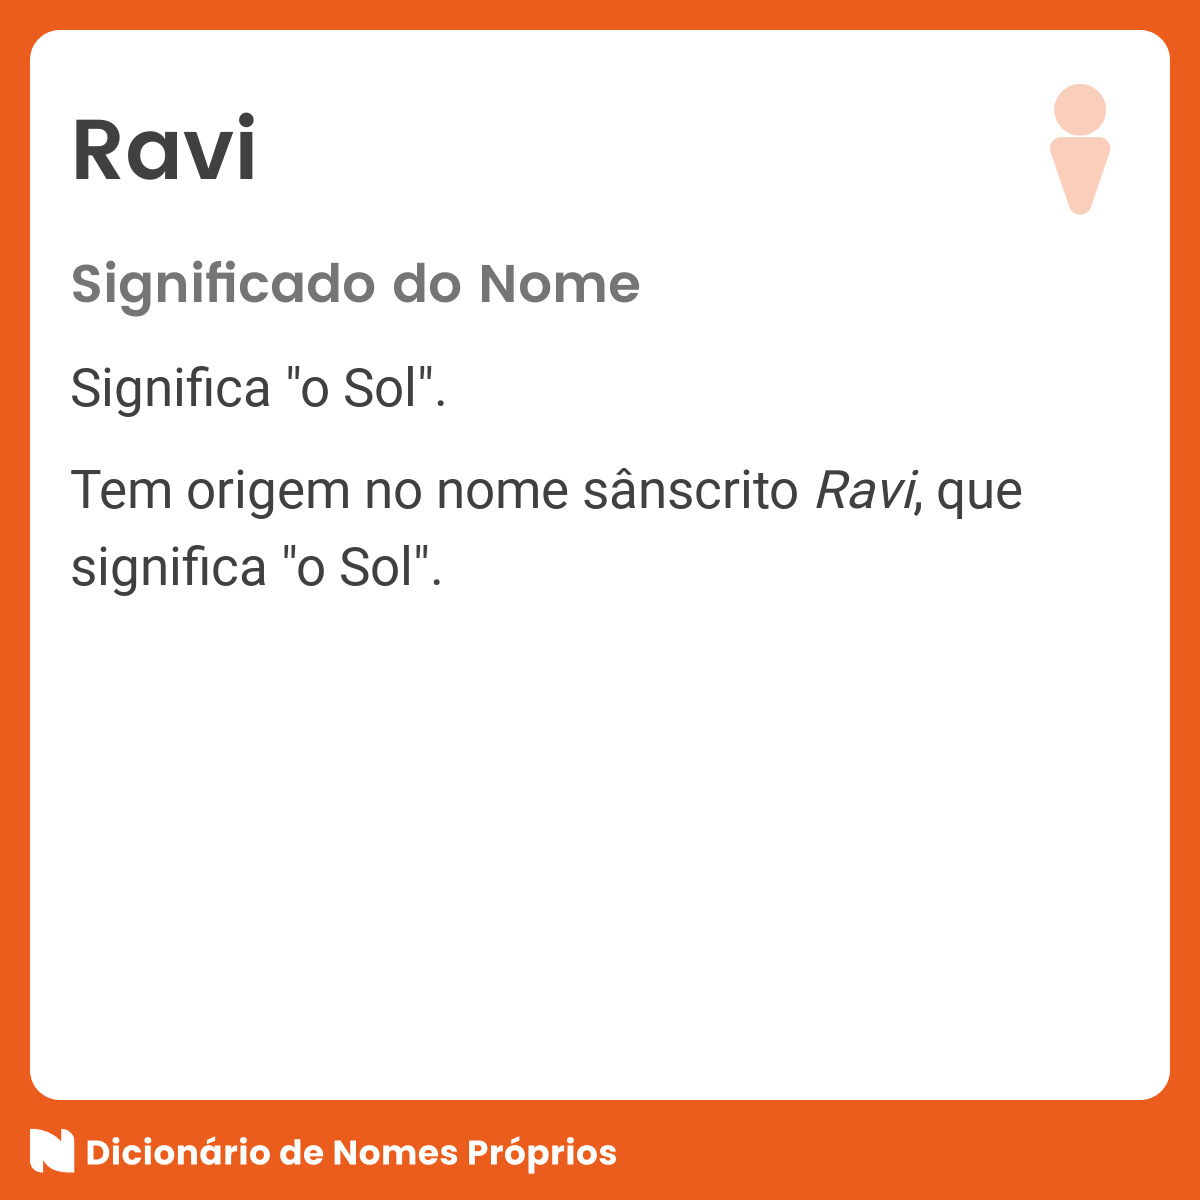 Significado do nome Ravi - Dicionário de Nomes Próprios